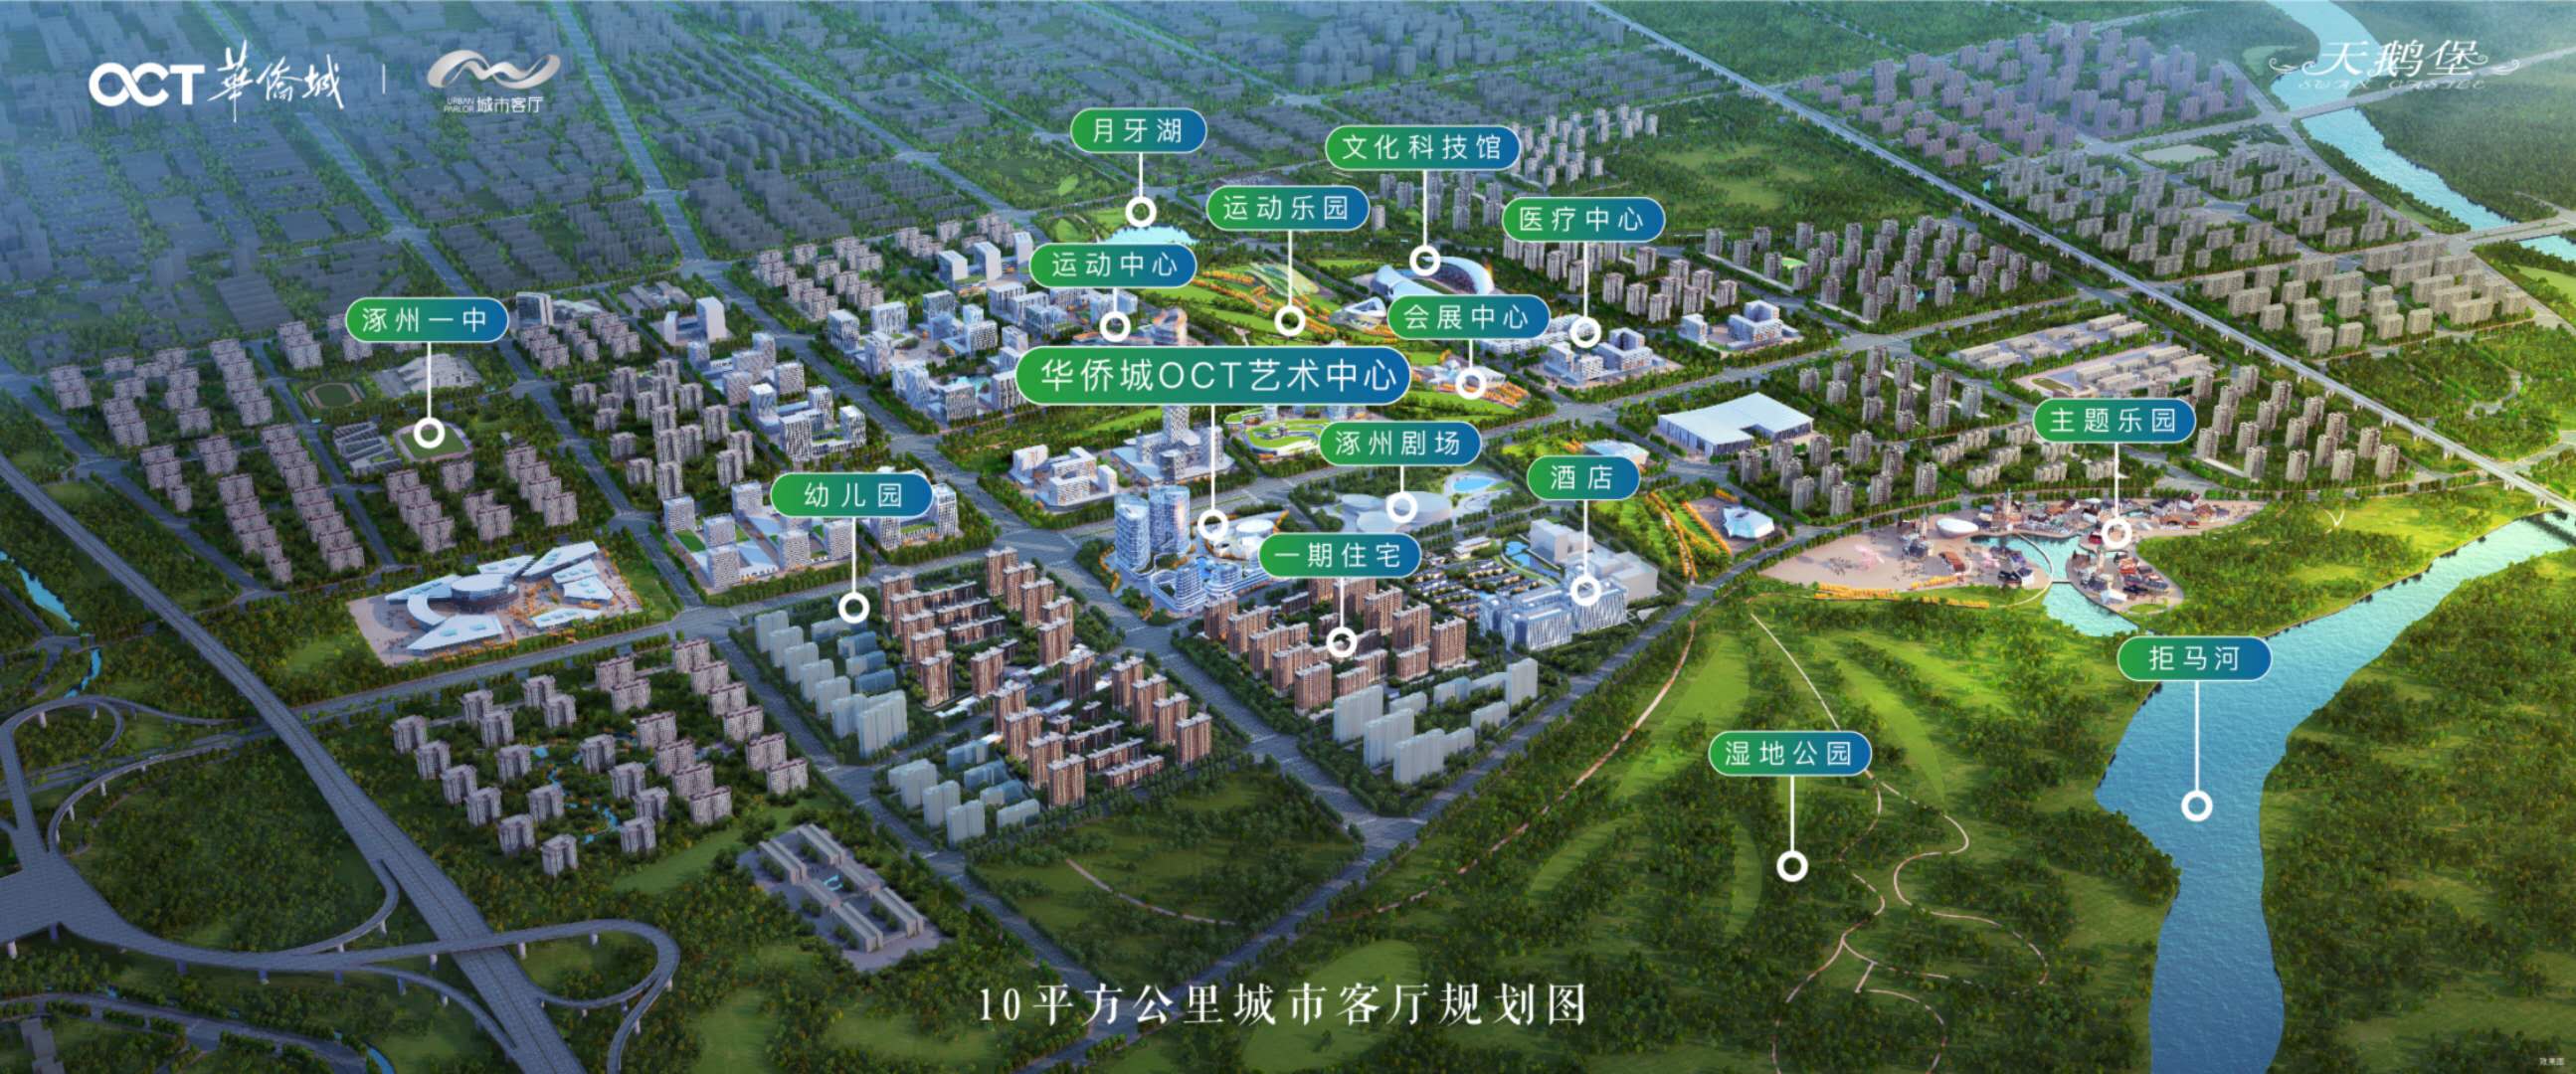 涿州华侨城楼盘鸟瞰图